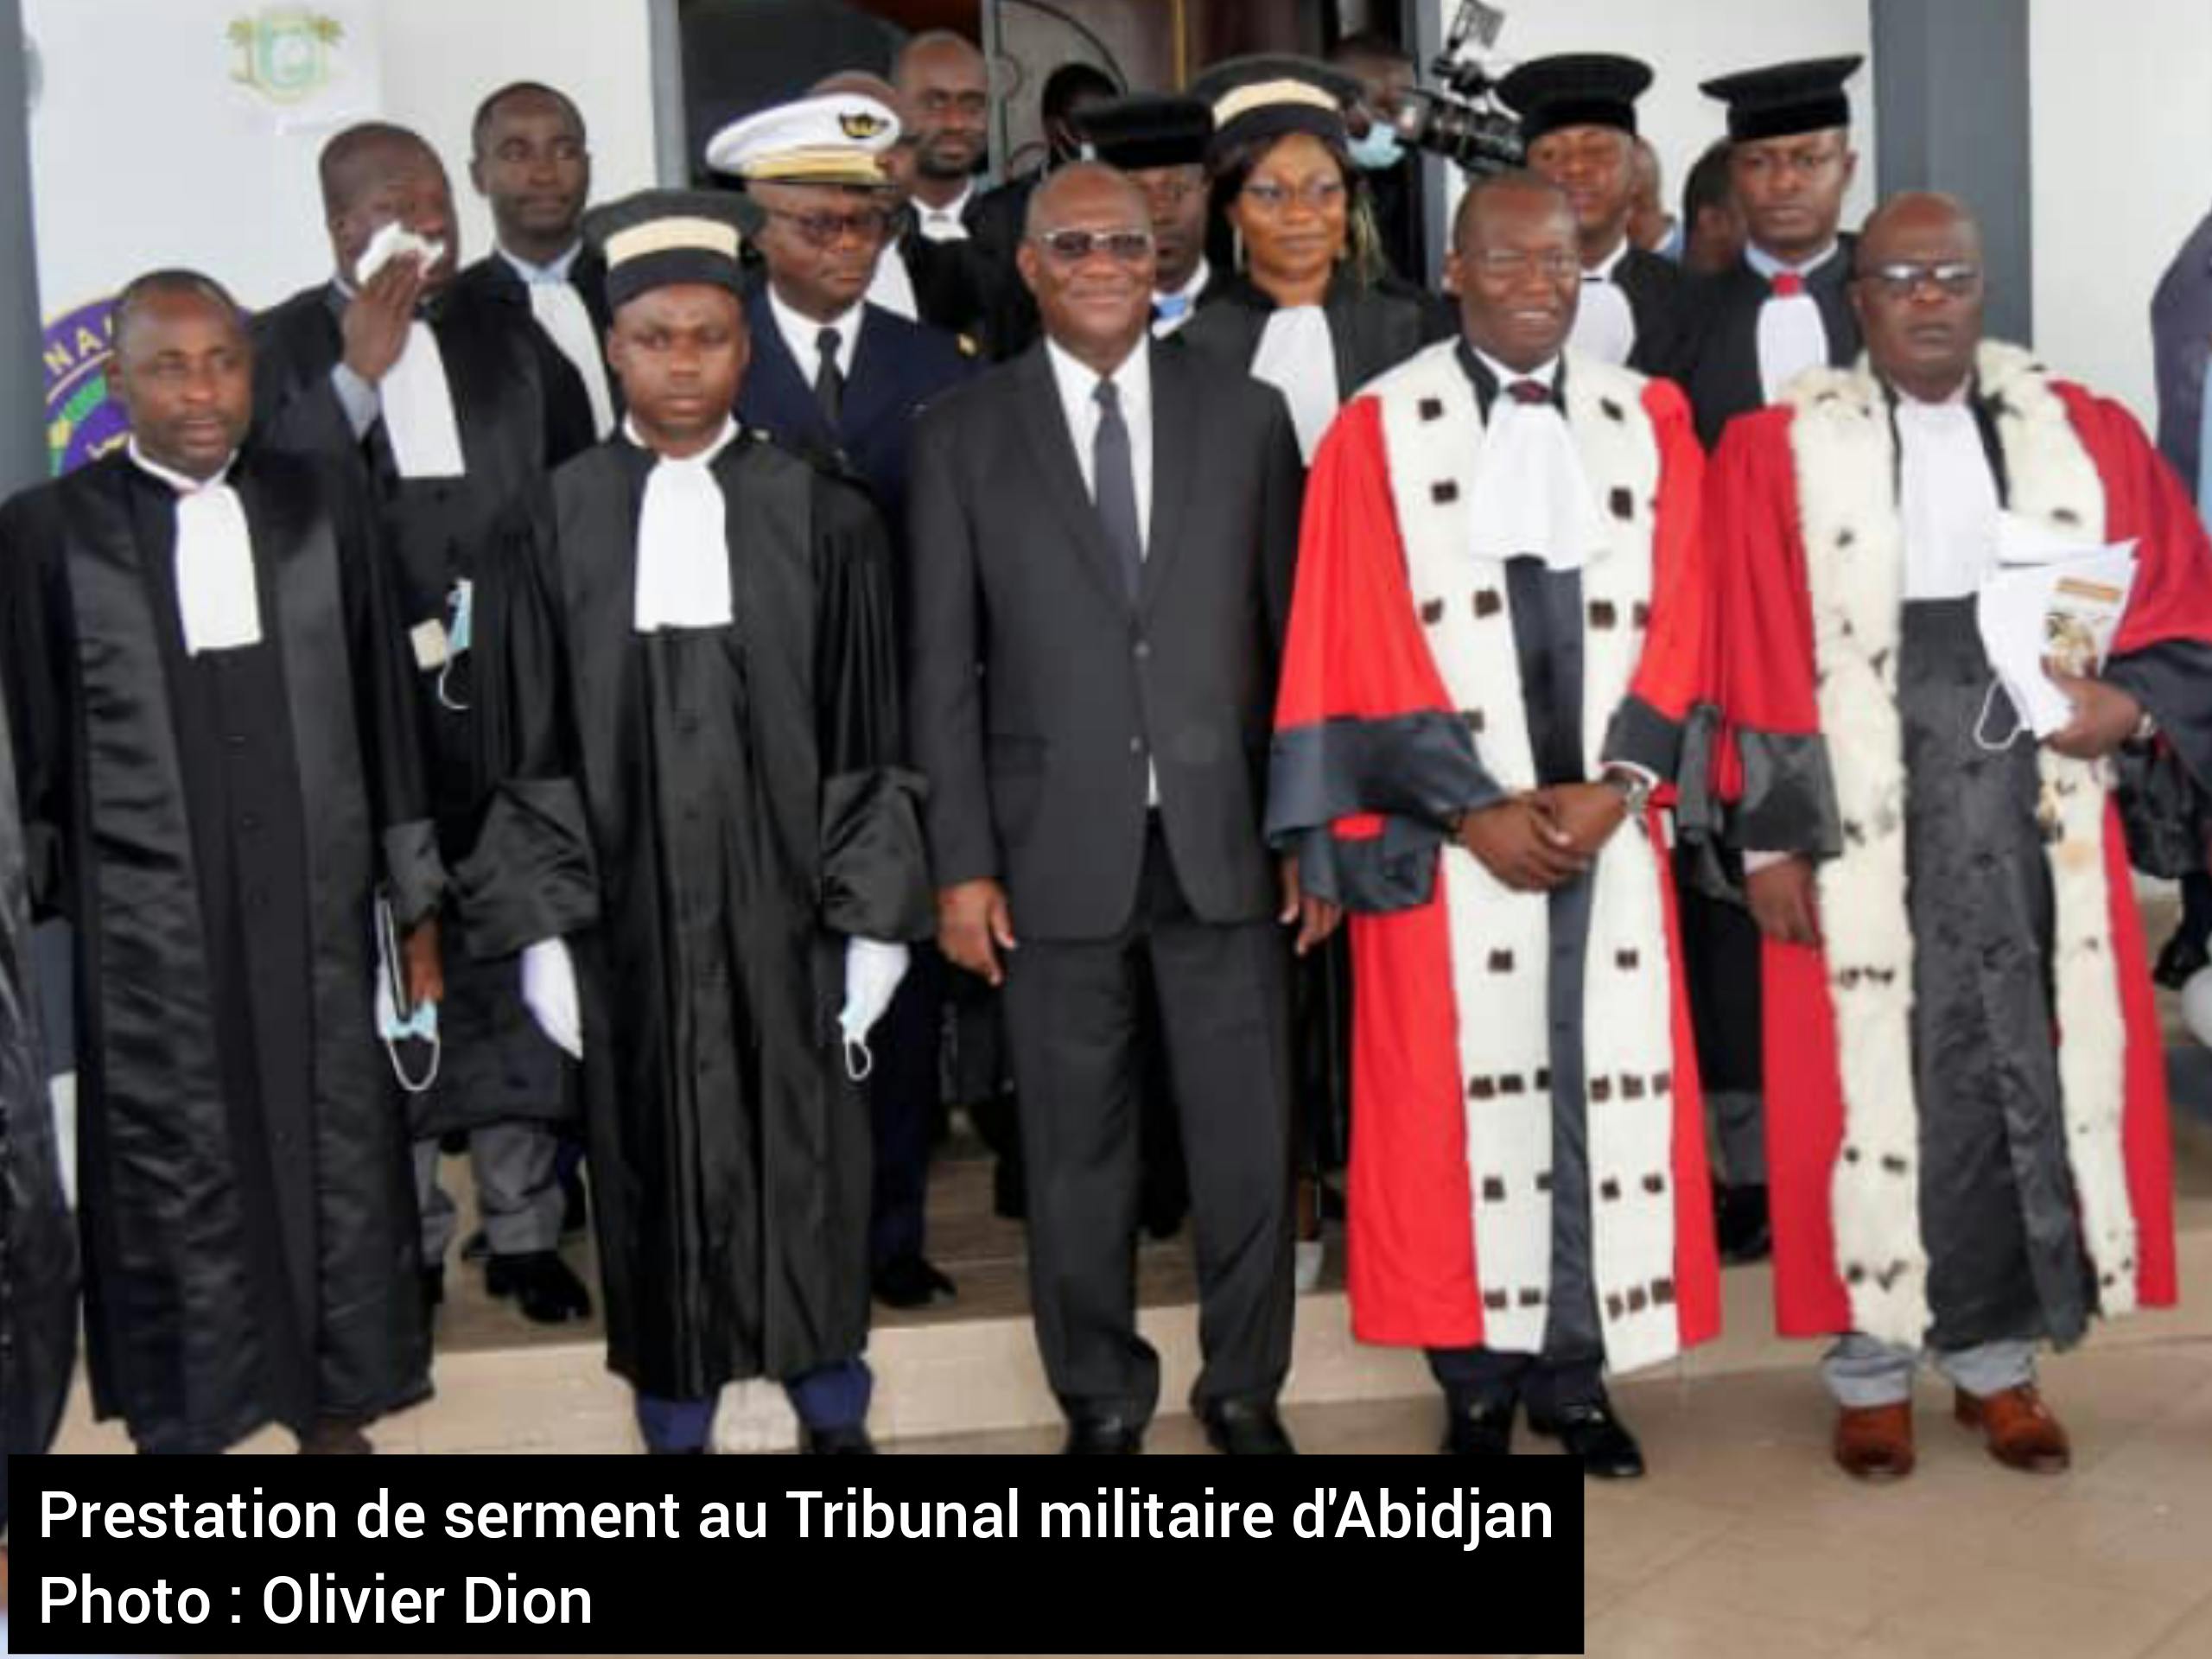 Prestation de serment au Tribunal militaire d’Abidjan – Téné Birahima Ouattara : “Ceci contribue à renforcer notre outil de justice en matière militaire” 